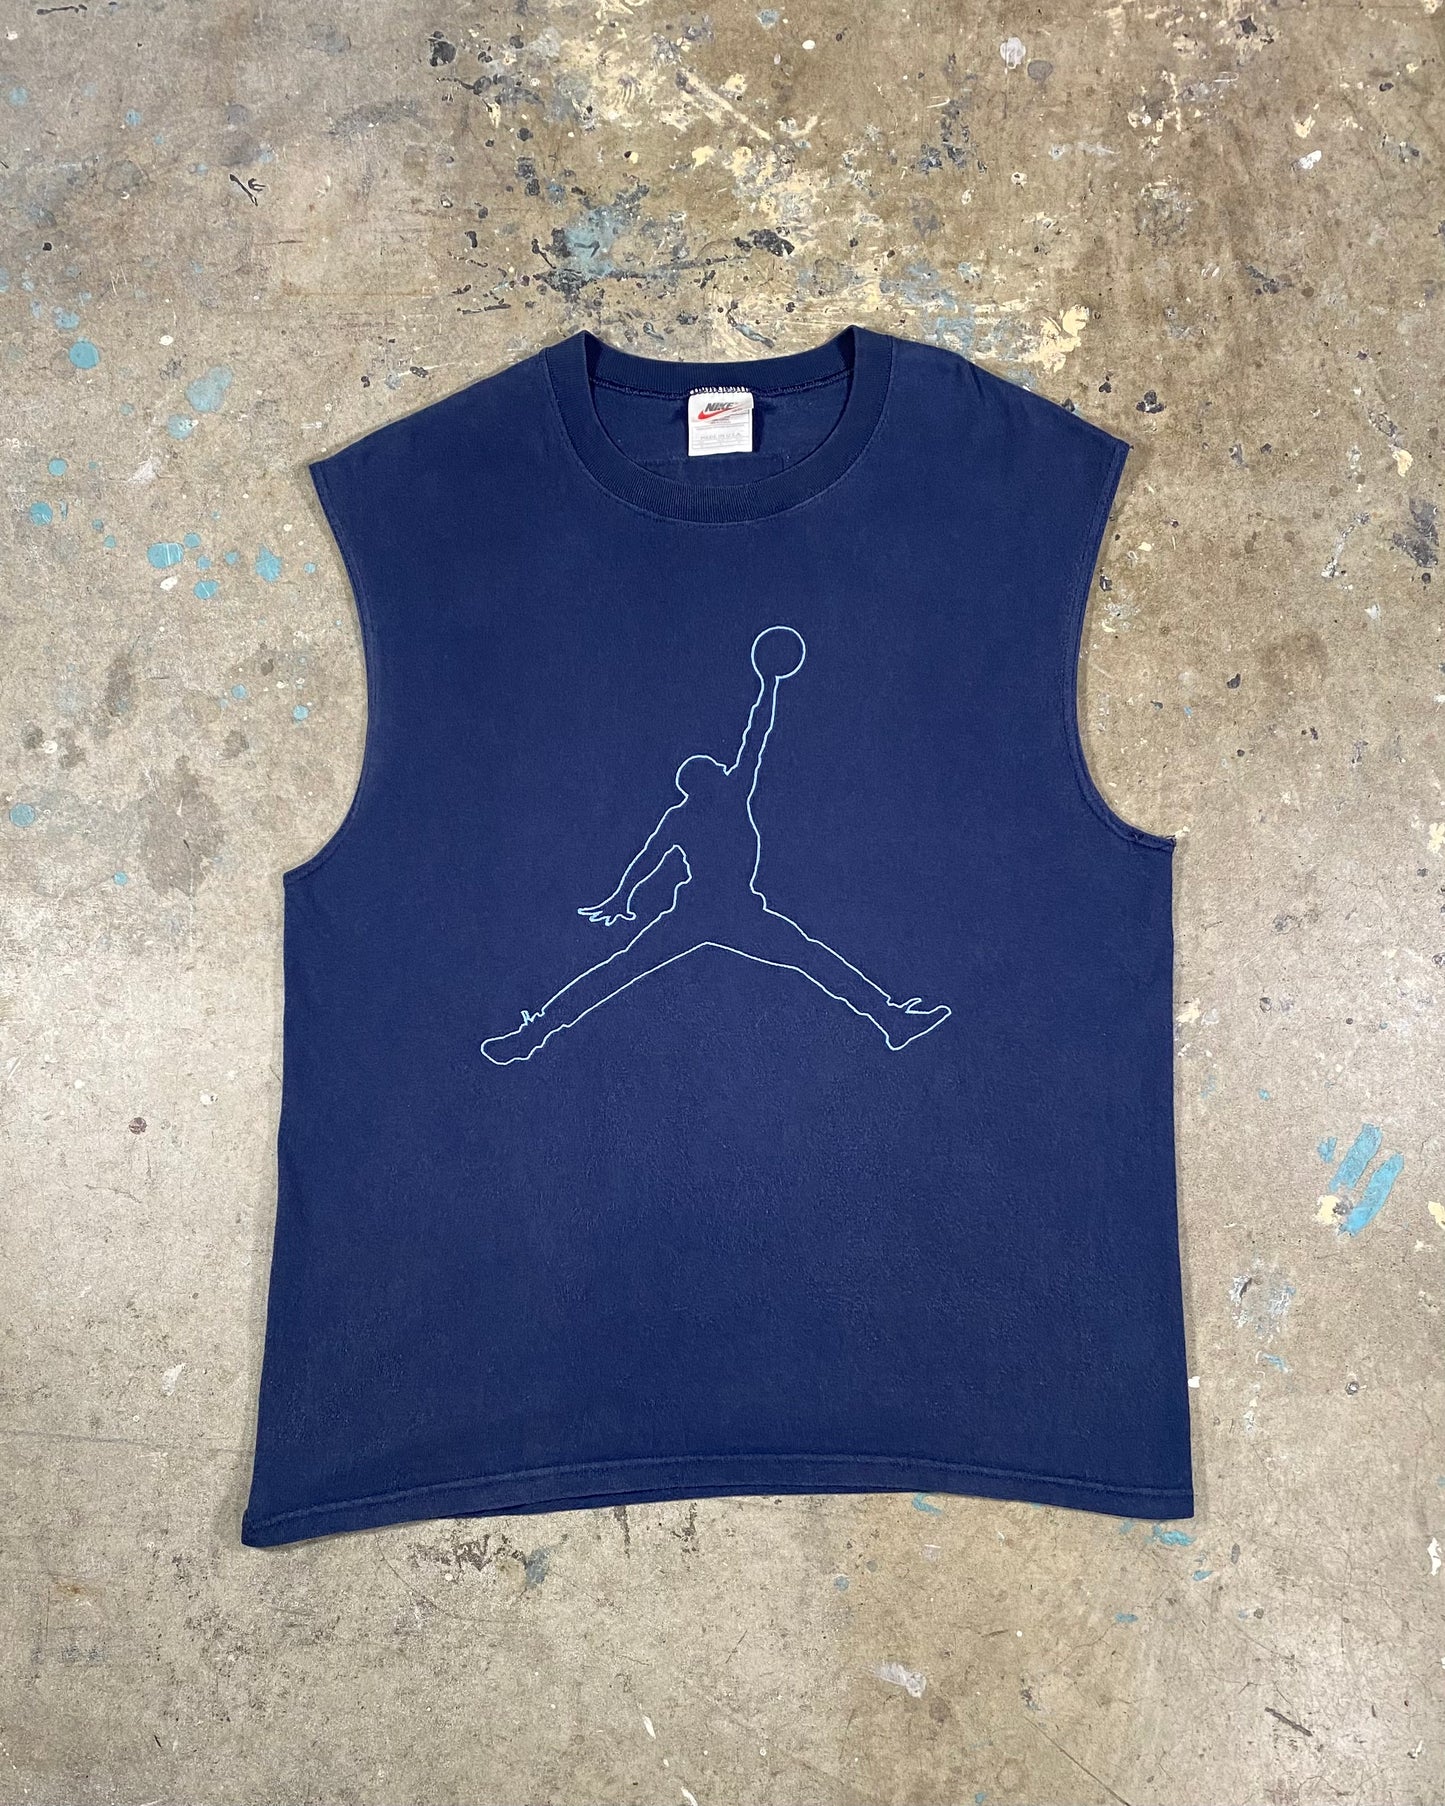 Nike Embroidered Basketball Tee (M)